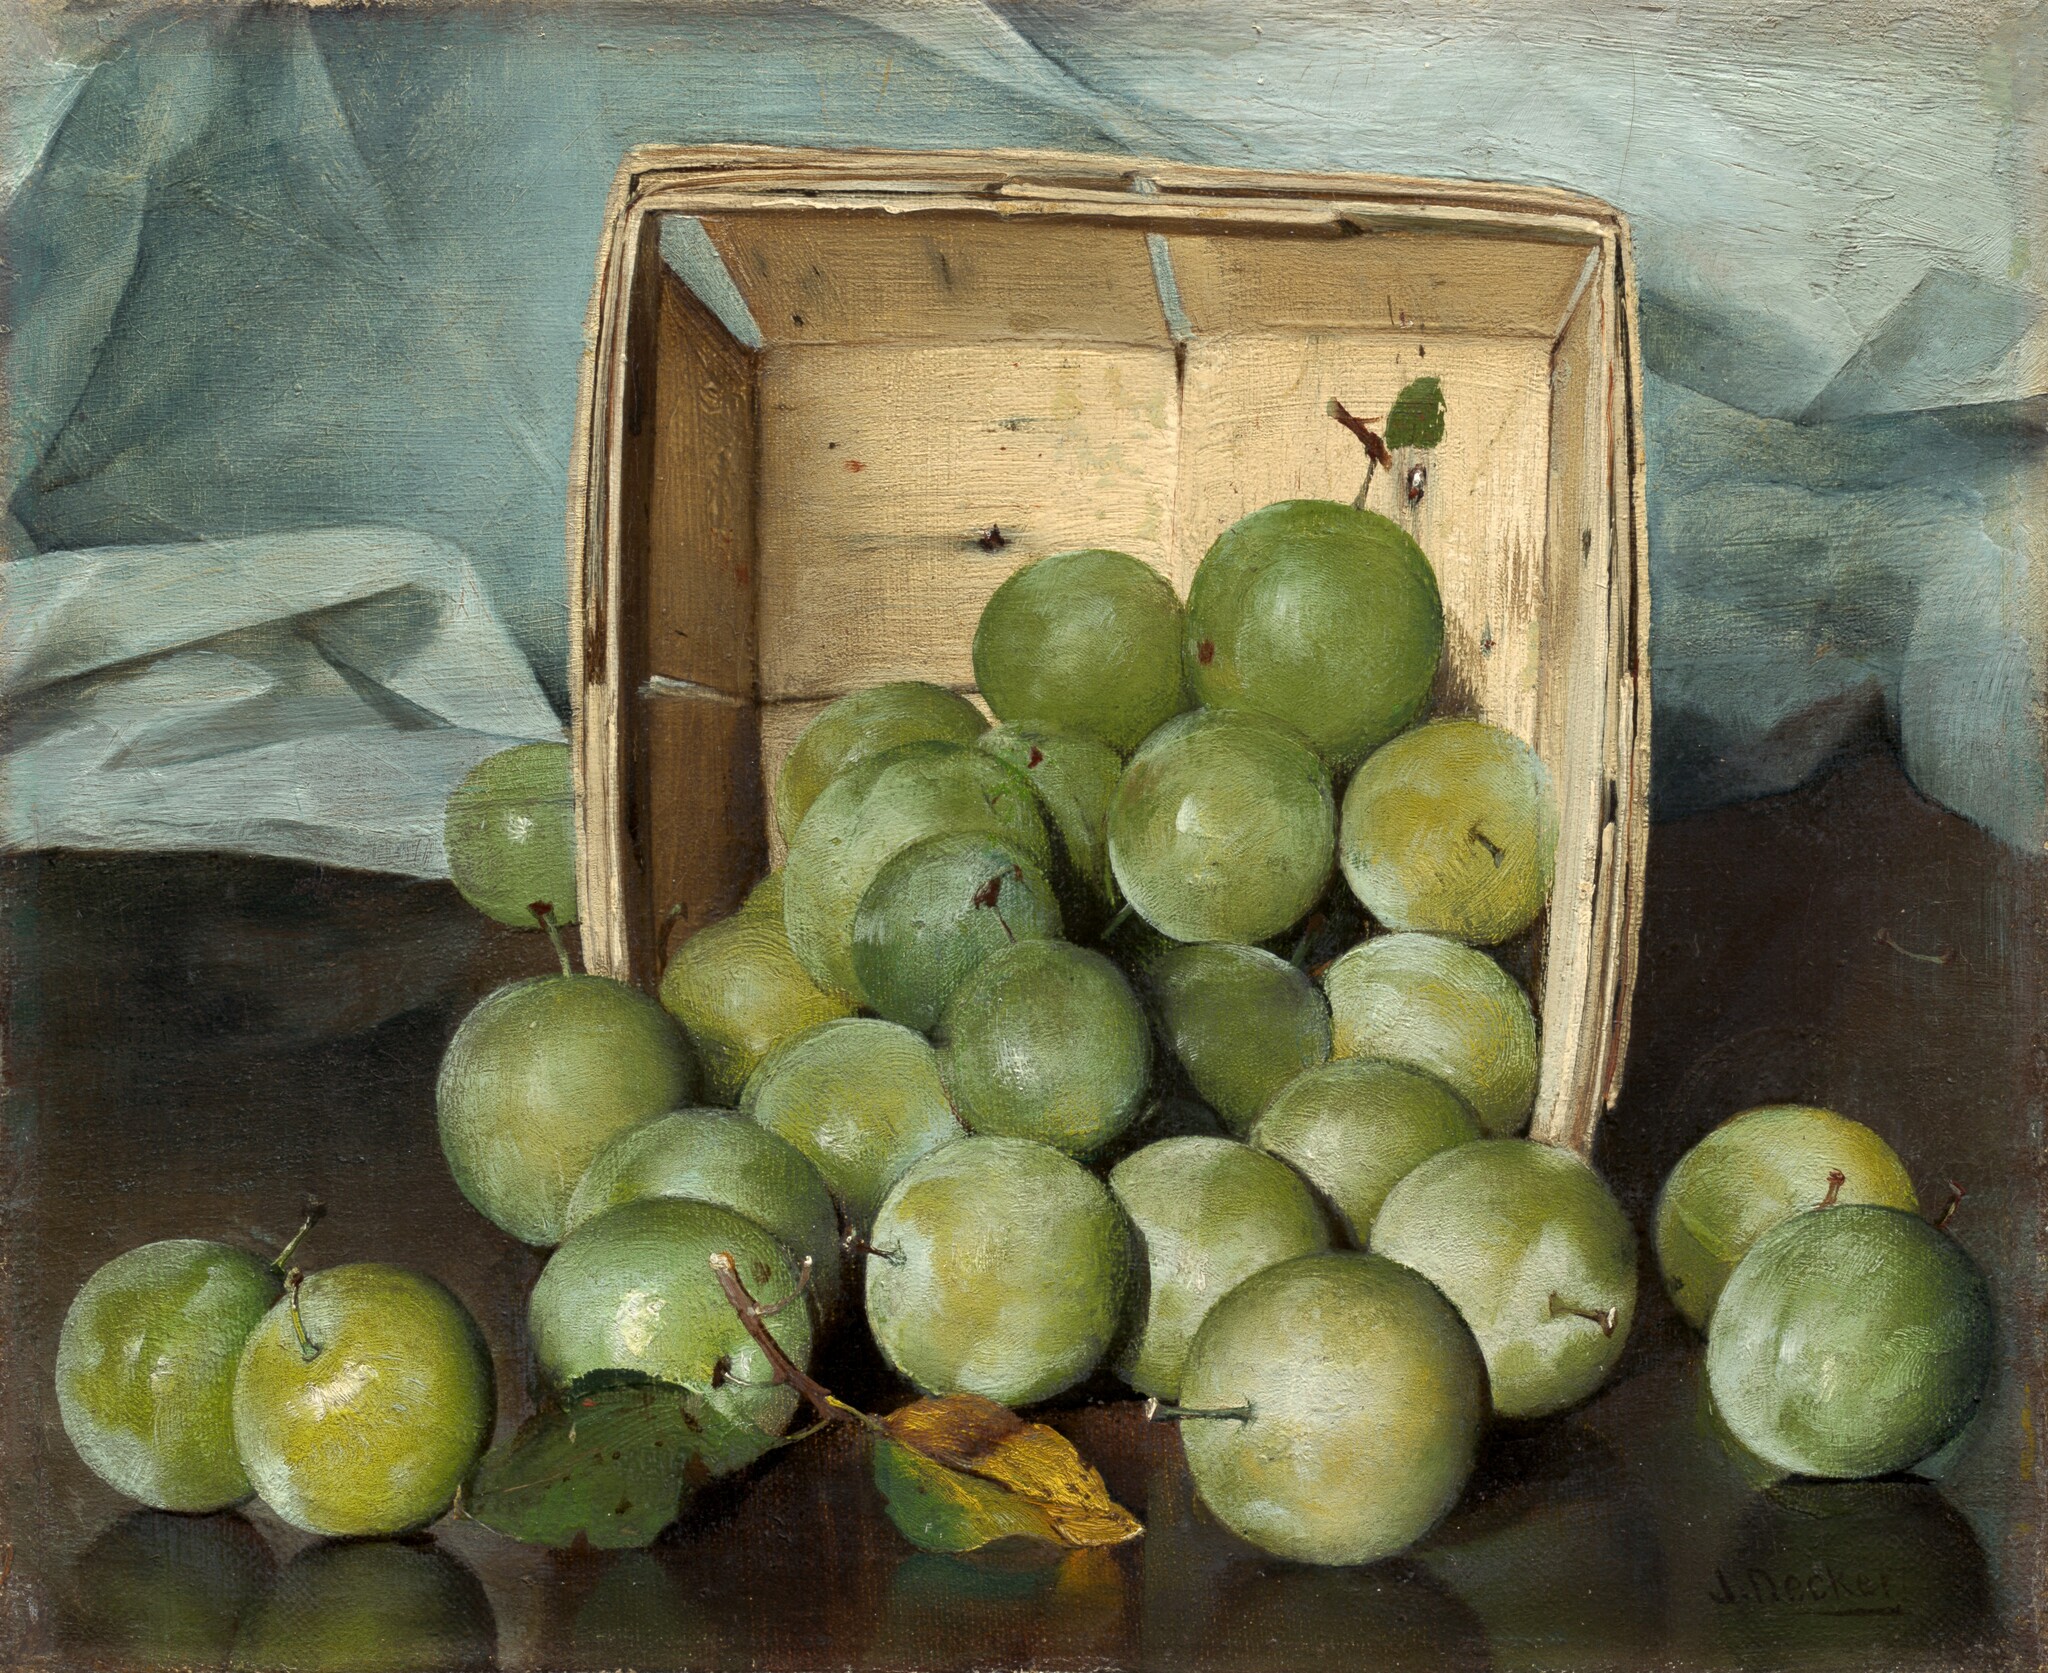 Grüne Pflaumen by Joseph Decker - c. 1885 - 22,9 x 27,8 cm National Gallery of Art